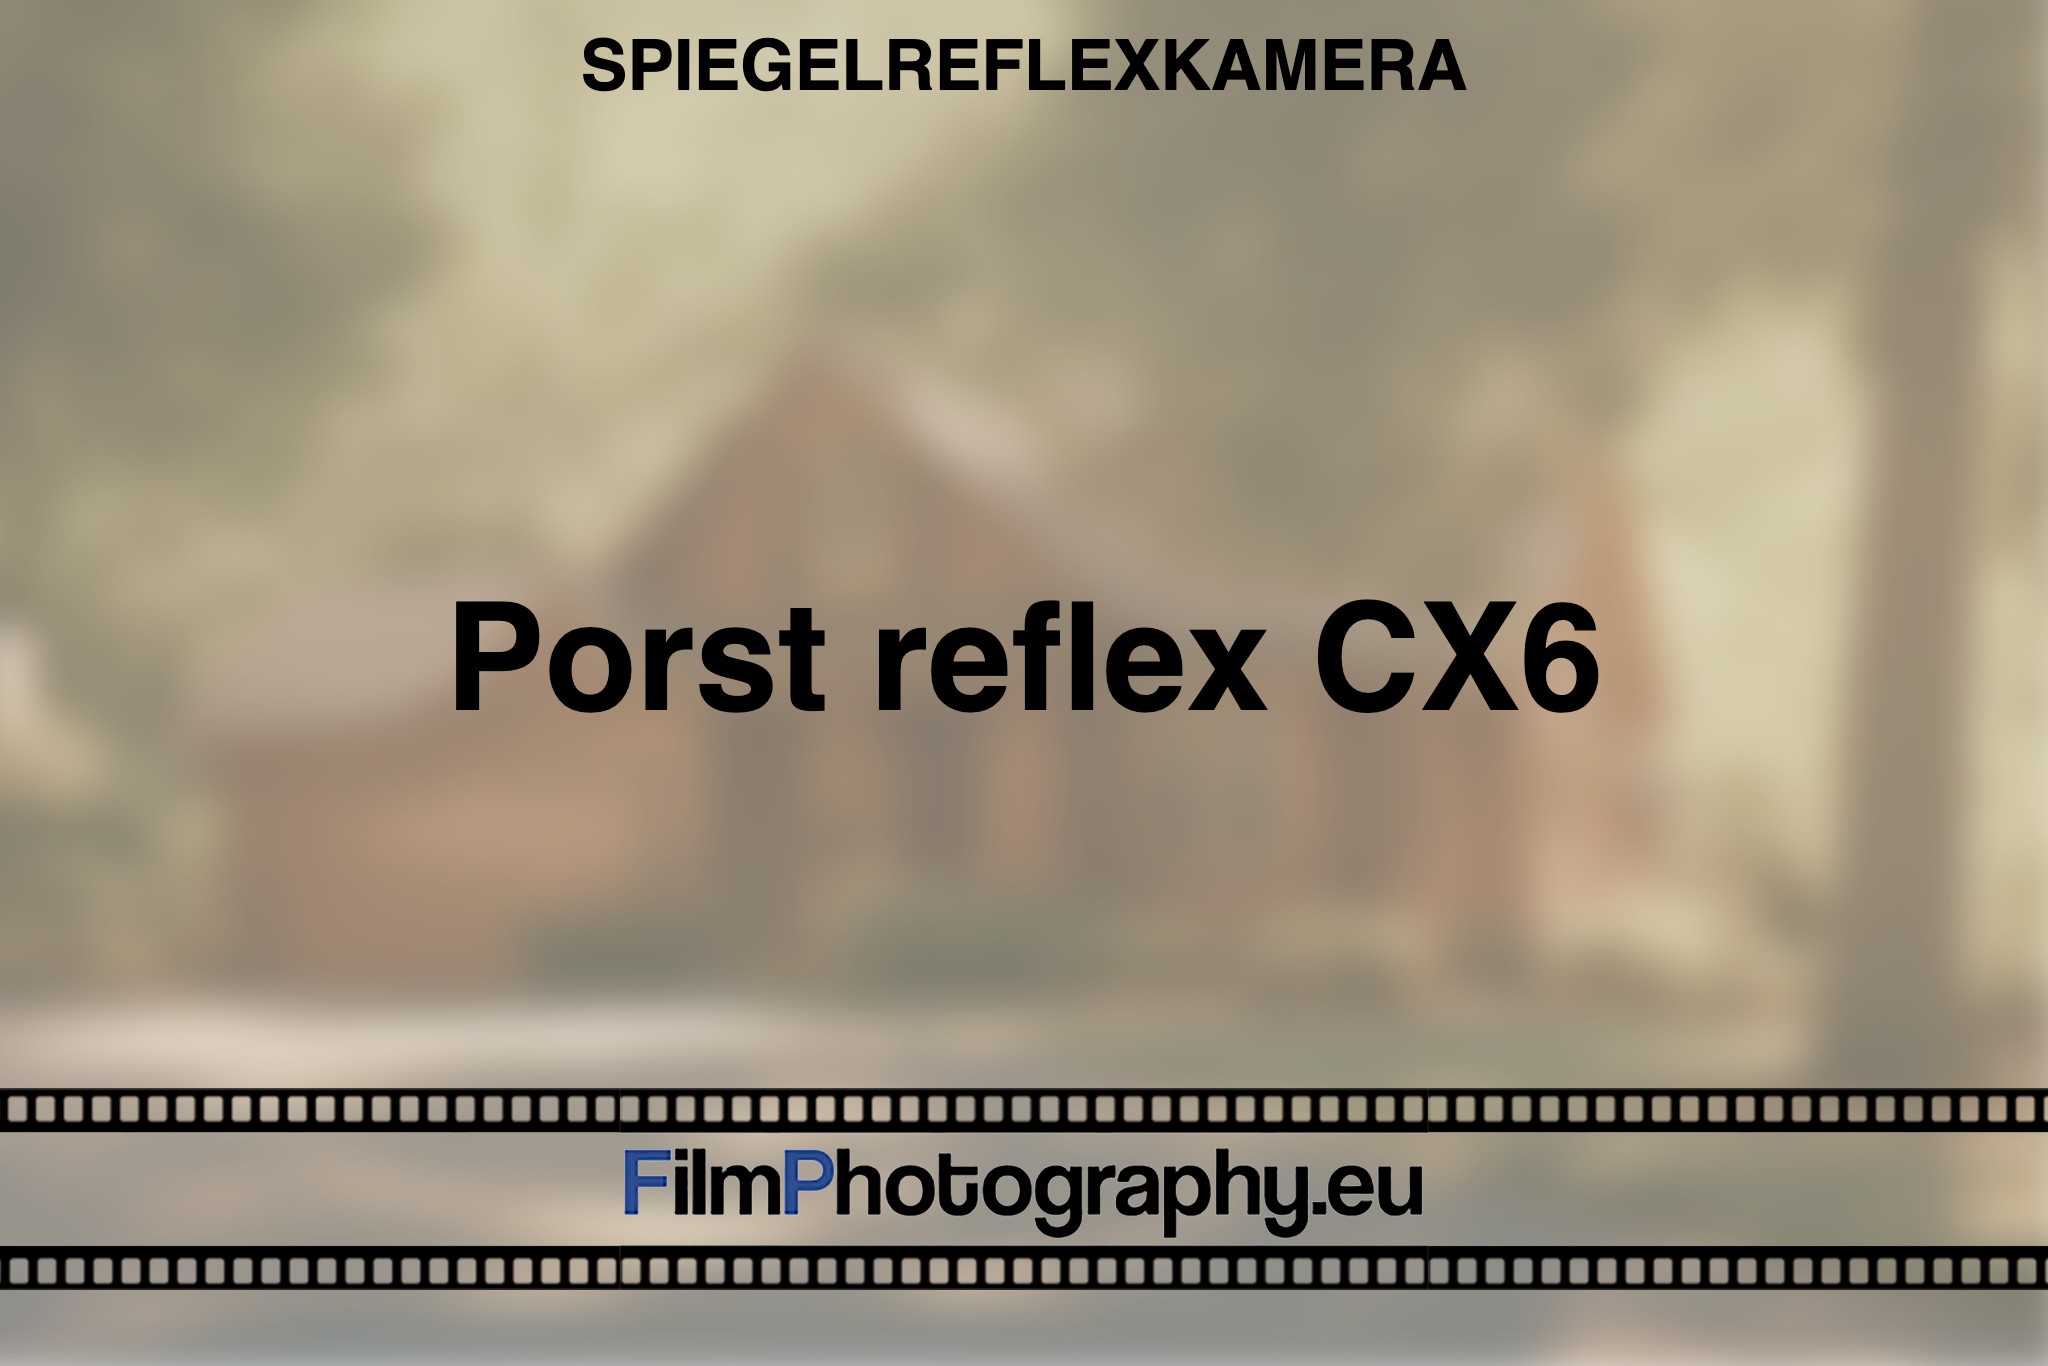 porst-reflex-cx6-spiegelreflexkamera-bnv